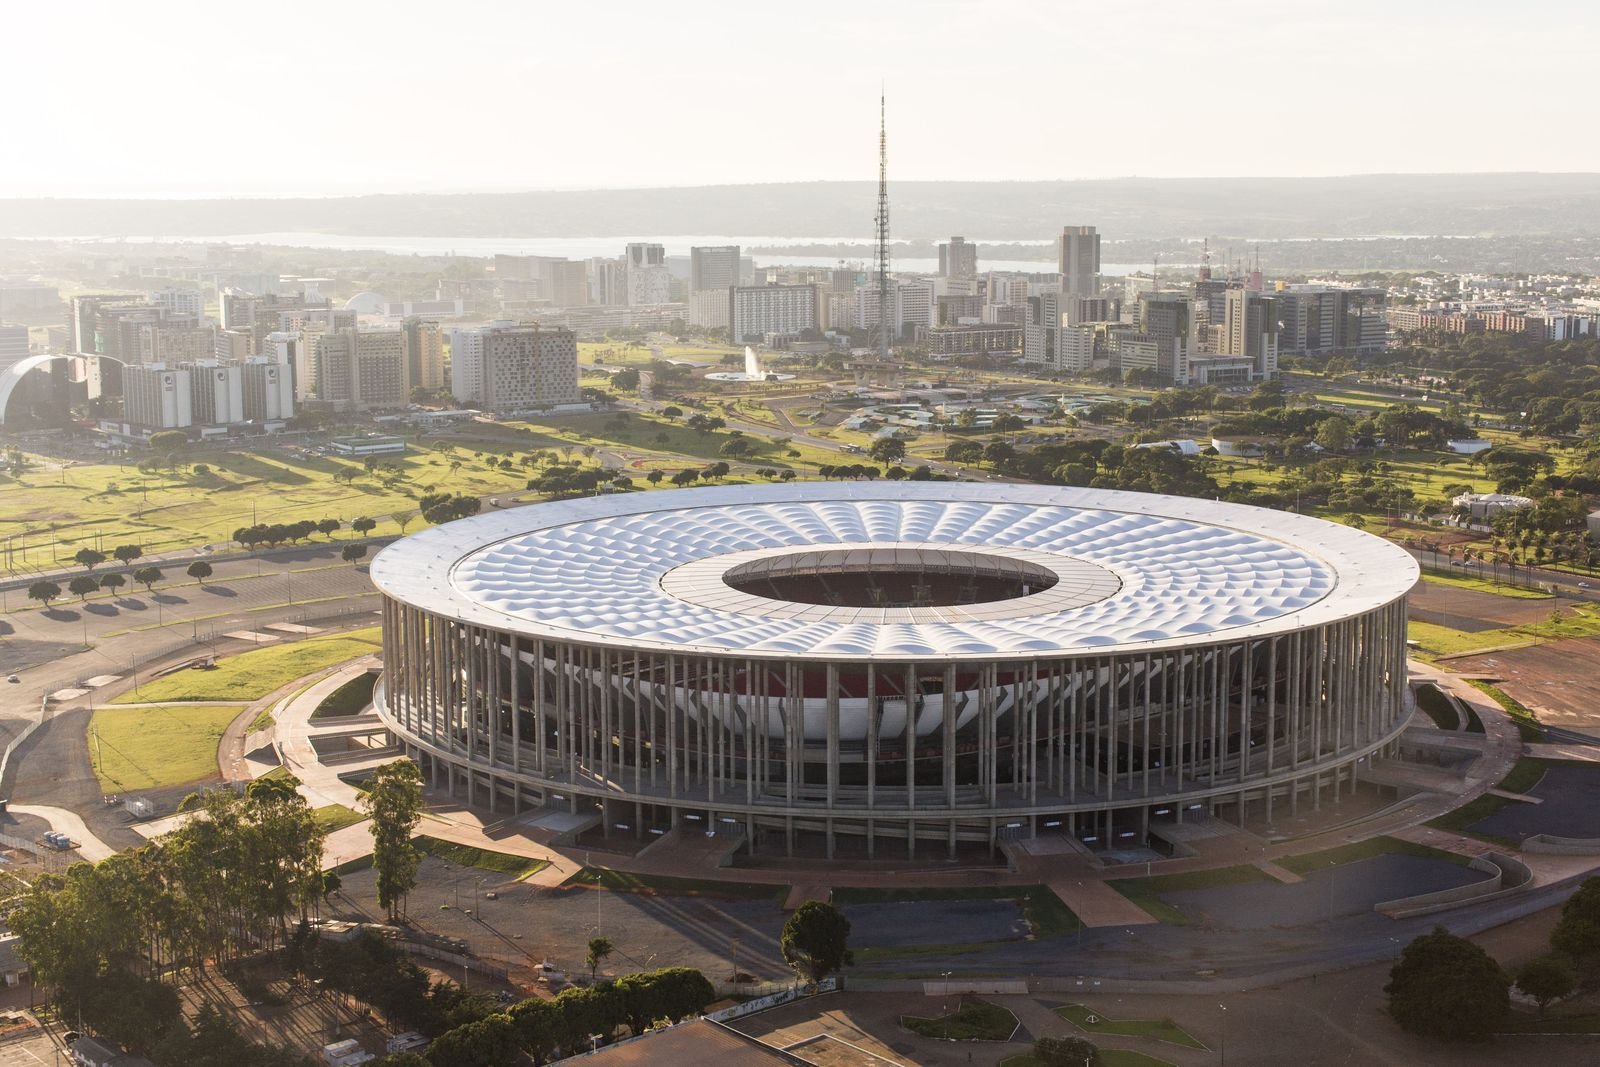 Pontos Turísticos de Brasília - Estádio Mané Garrincha